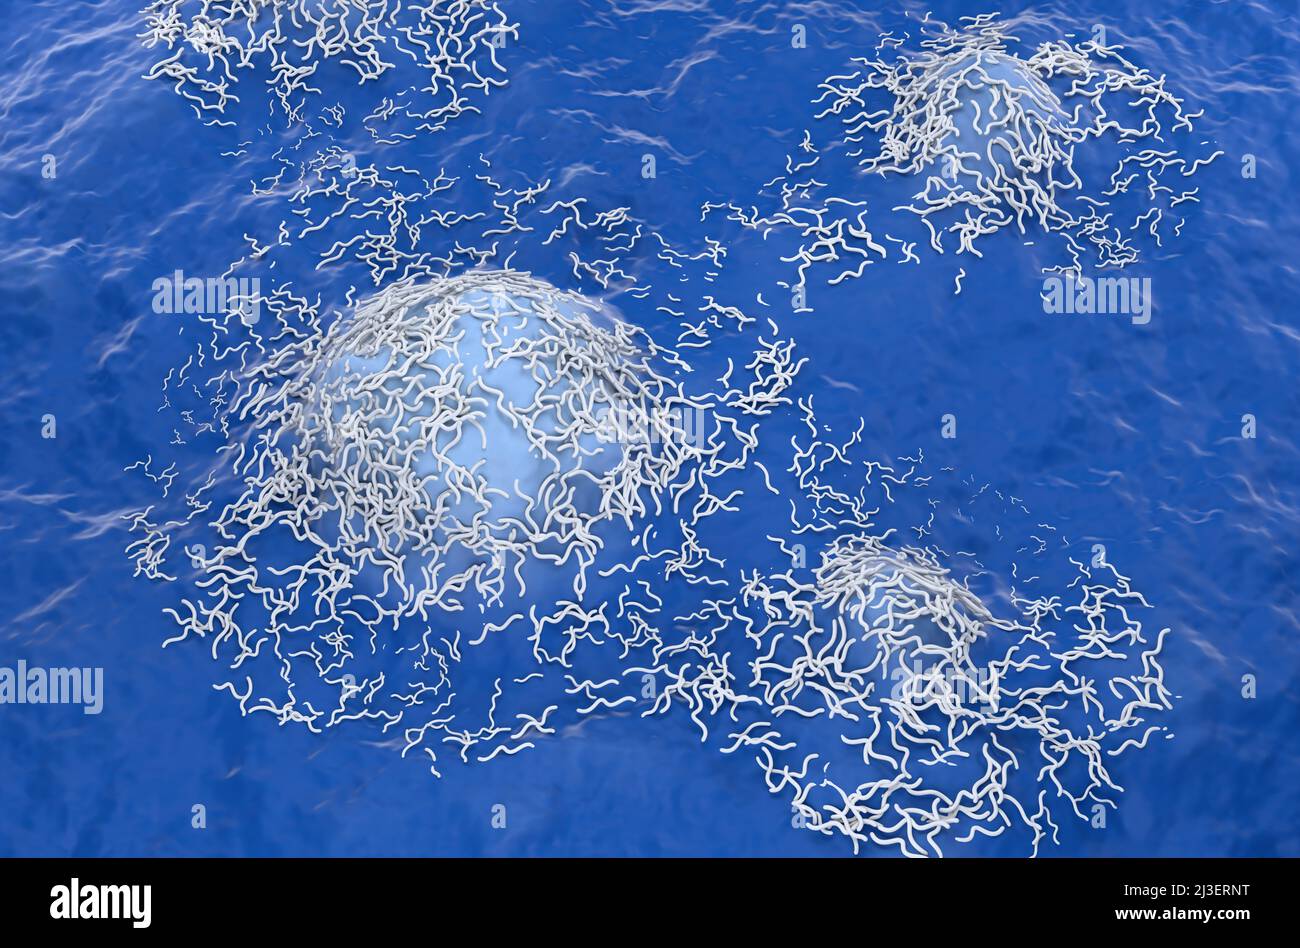 Cellule tumorali ependimoma (tumore cerebrale) - vista isometrica 3D illustrazione Foto Stock